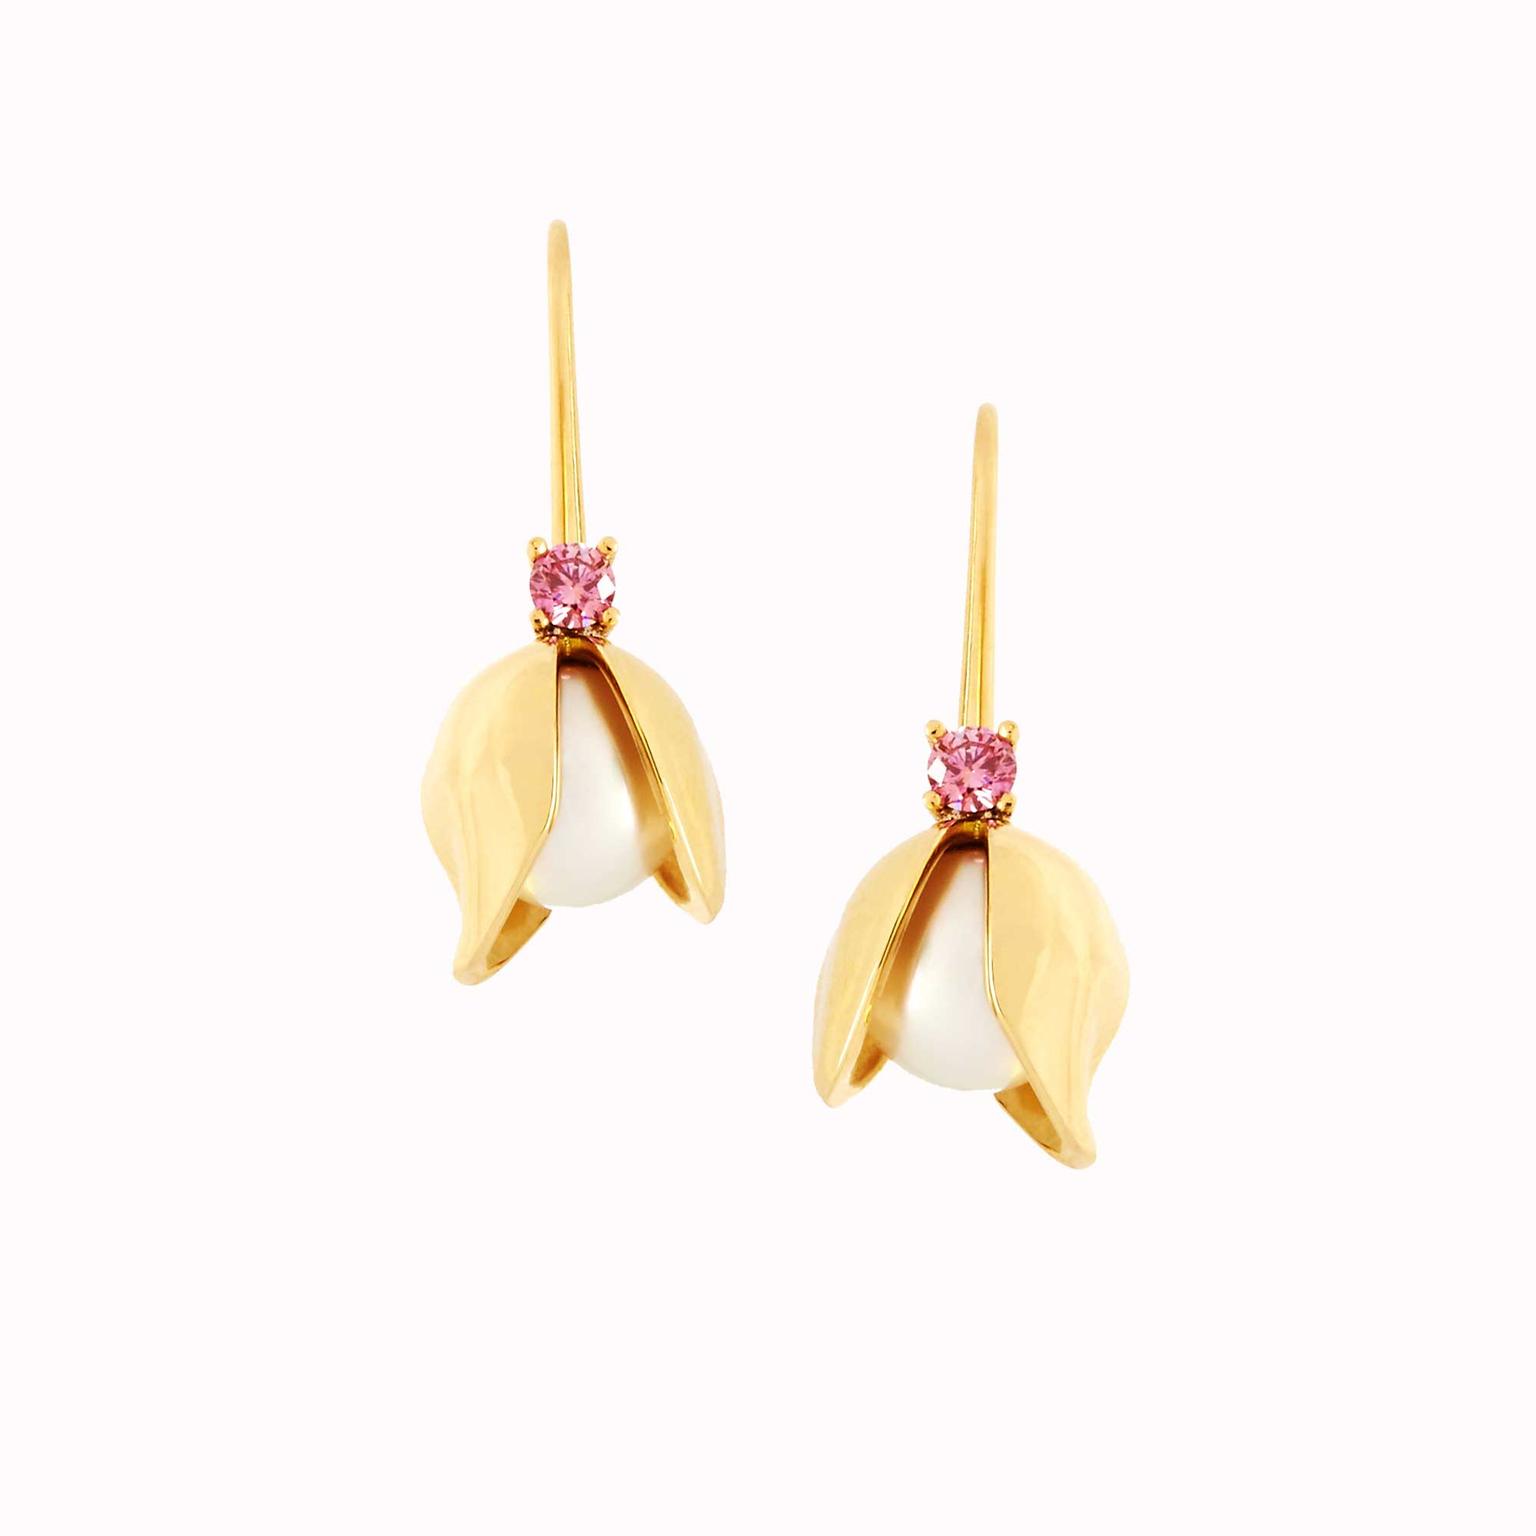 Tessa Packard Orchid drop earrings